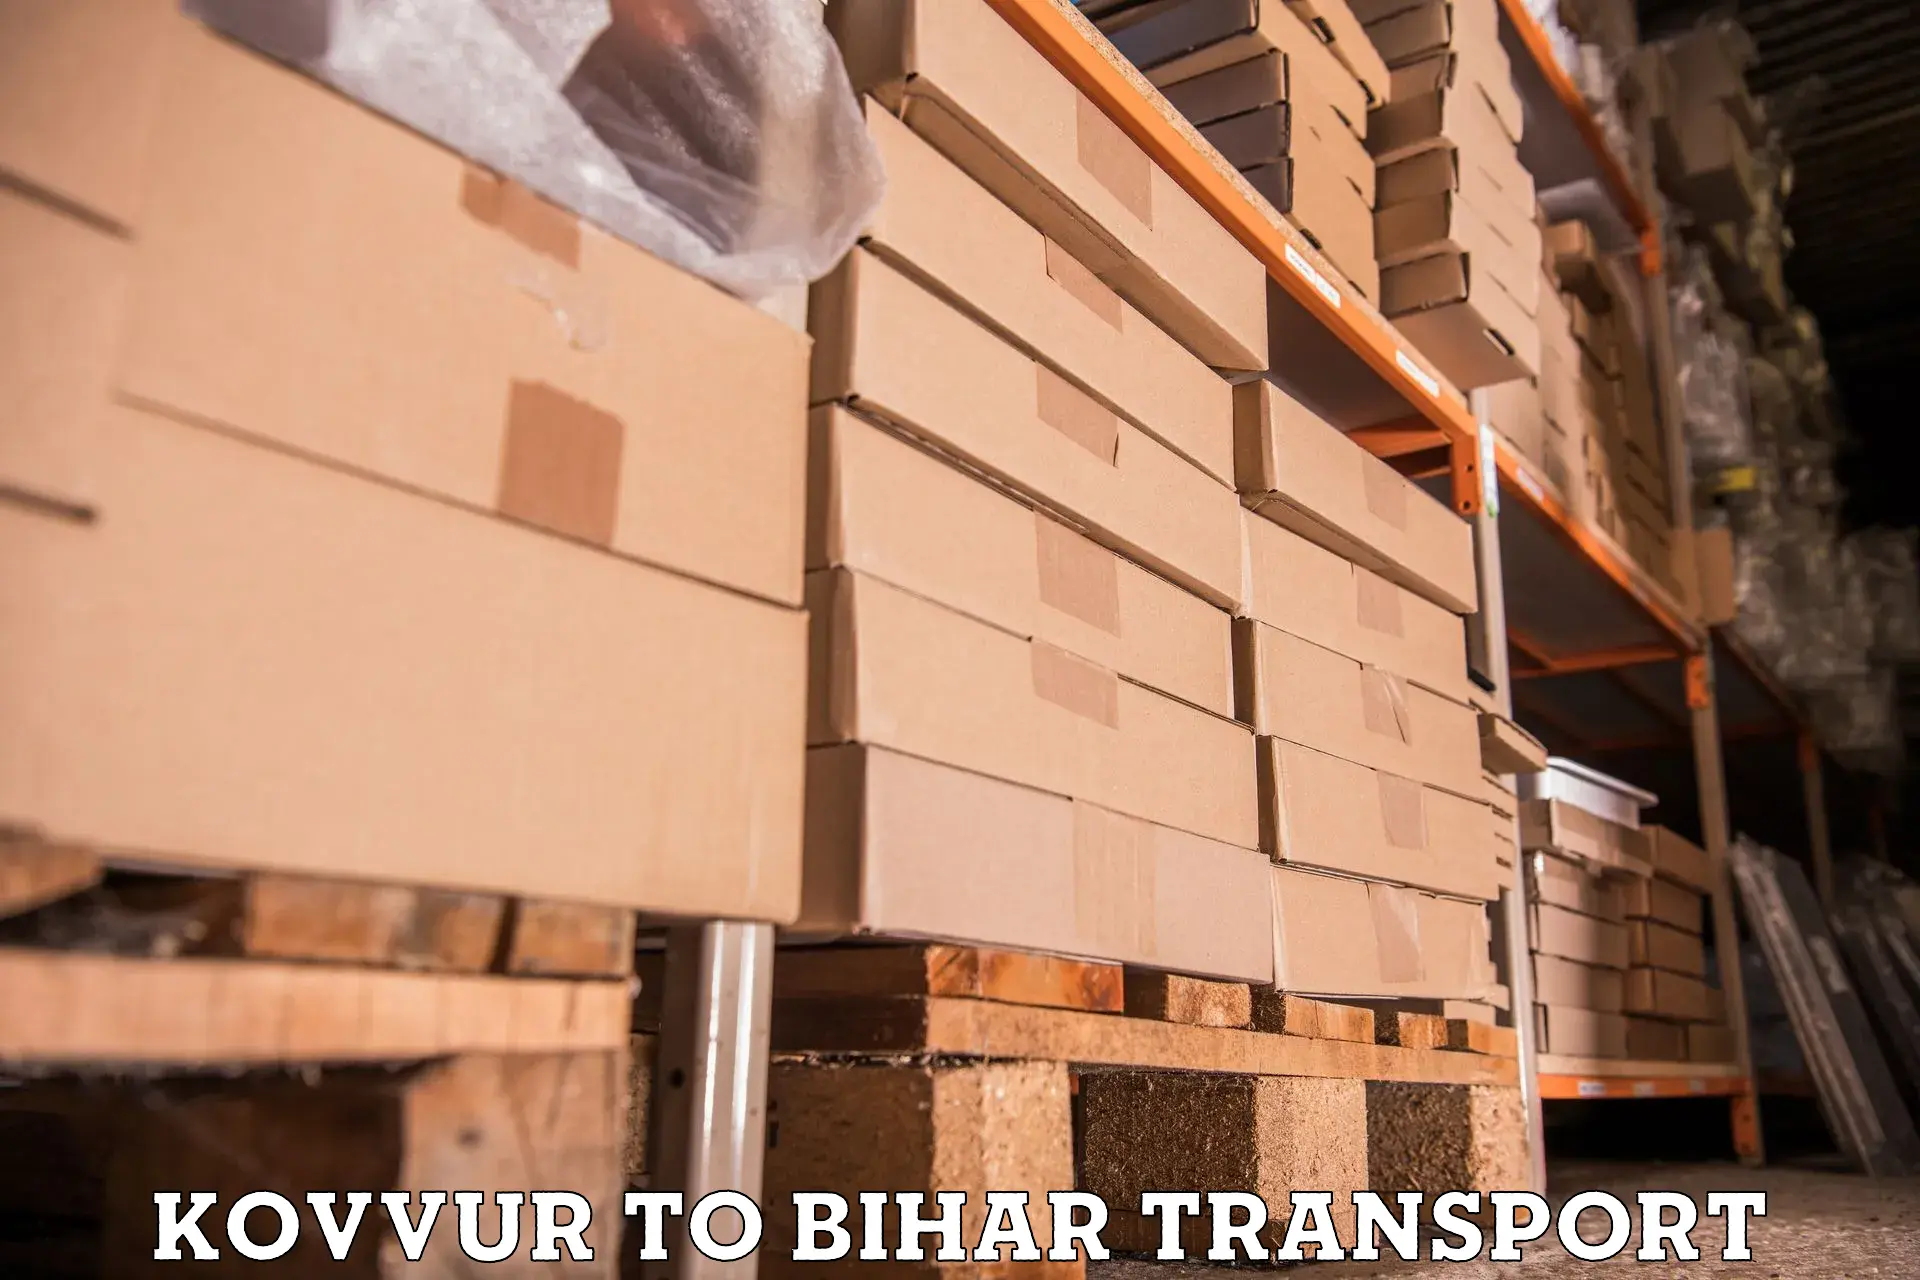 Shipping services Kovvur to Kishunganj